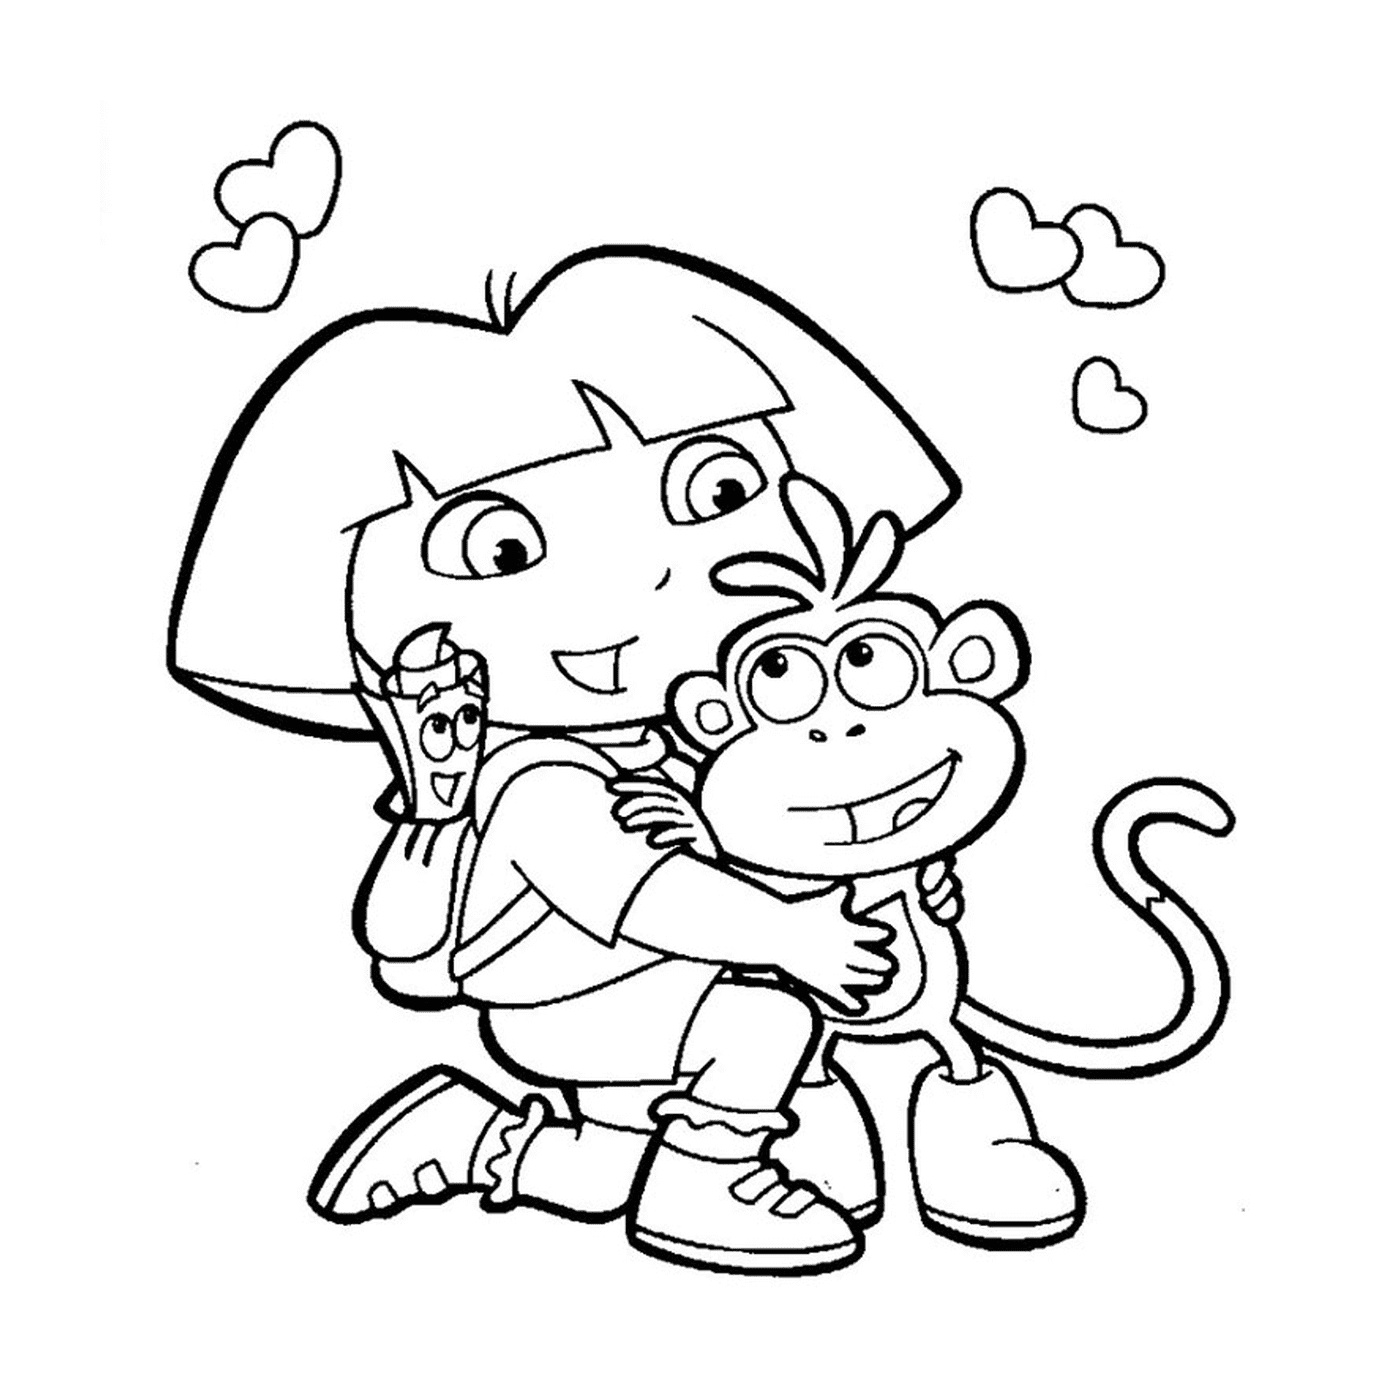  Дора держит обезьяну с любовью 